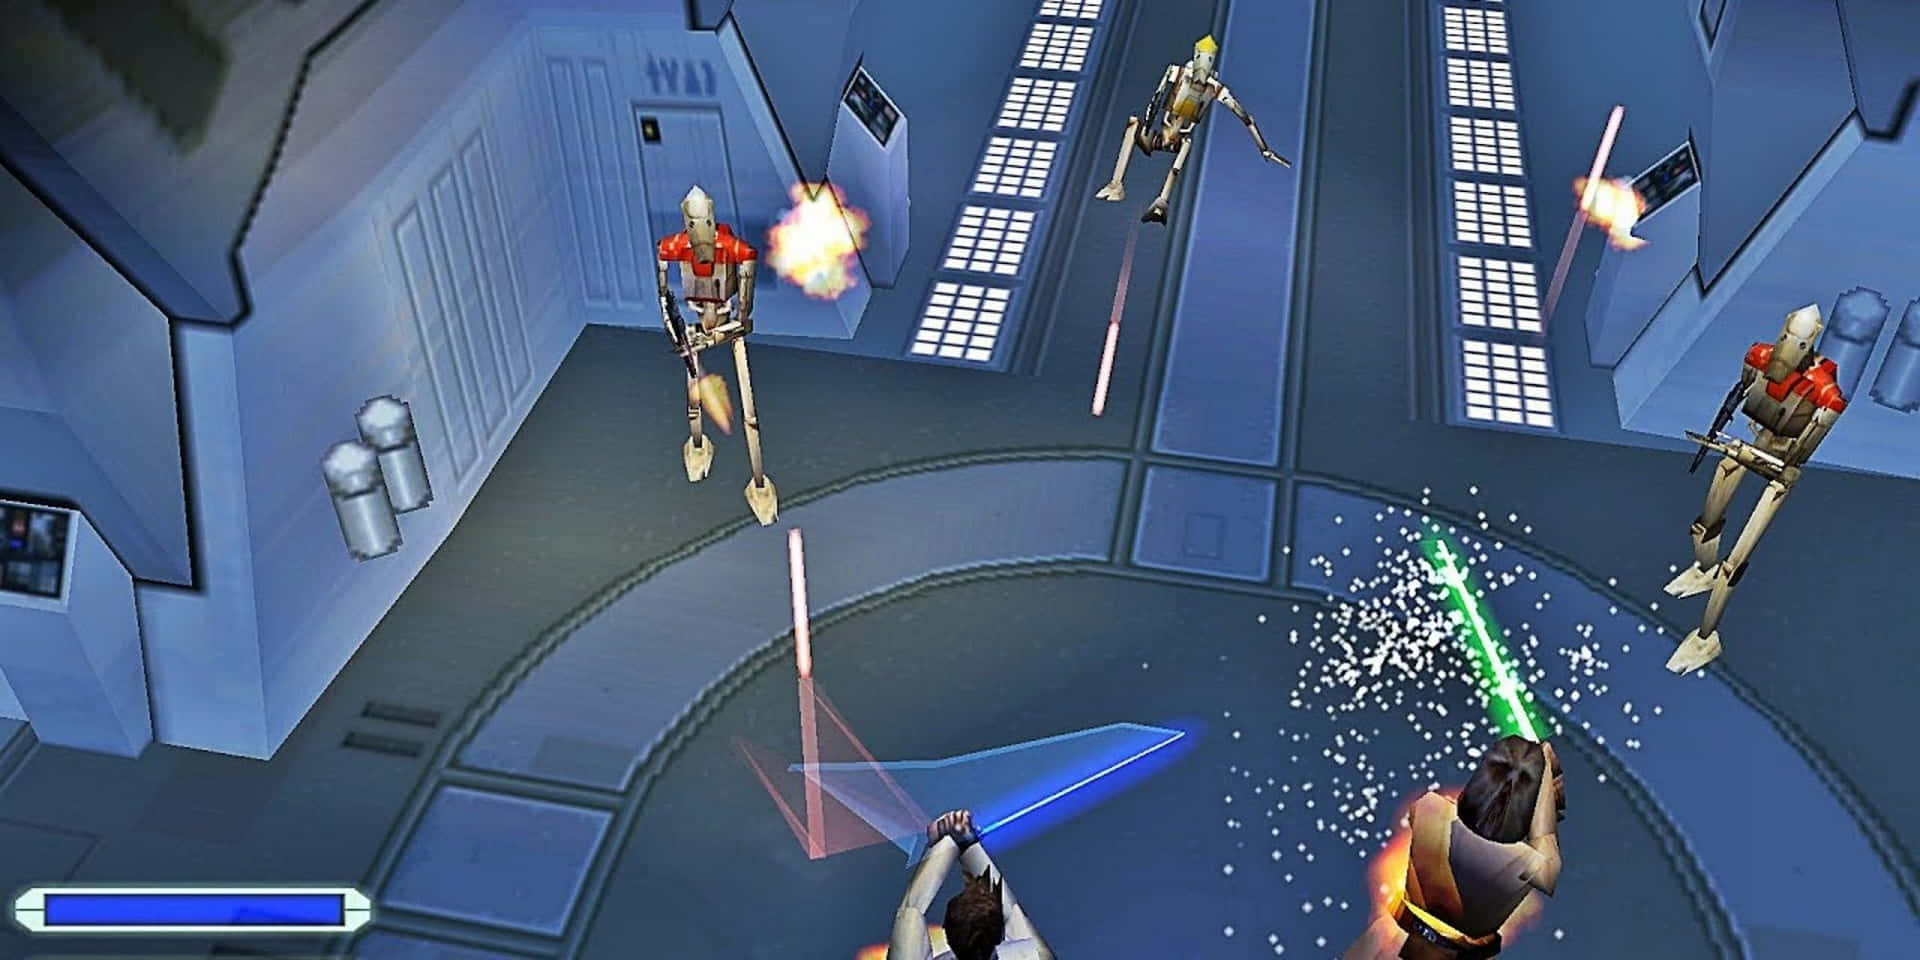 Qui-Gon Jinn and Obi-Wan Kenobi bravely face the battle in Star Wars Episode I: The Phantom Menace Wallpaper